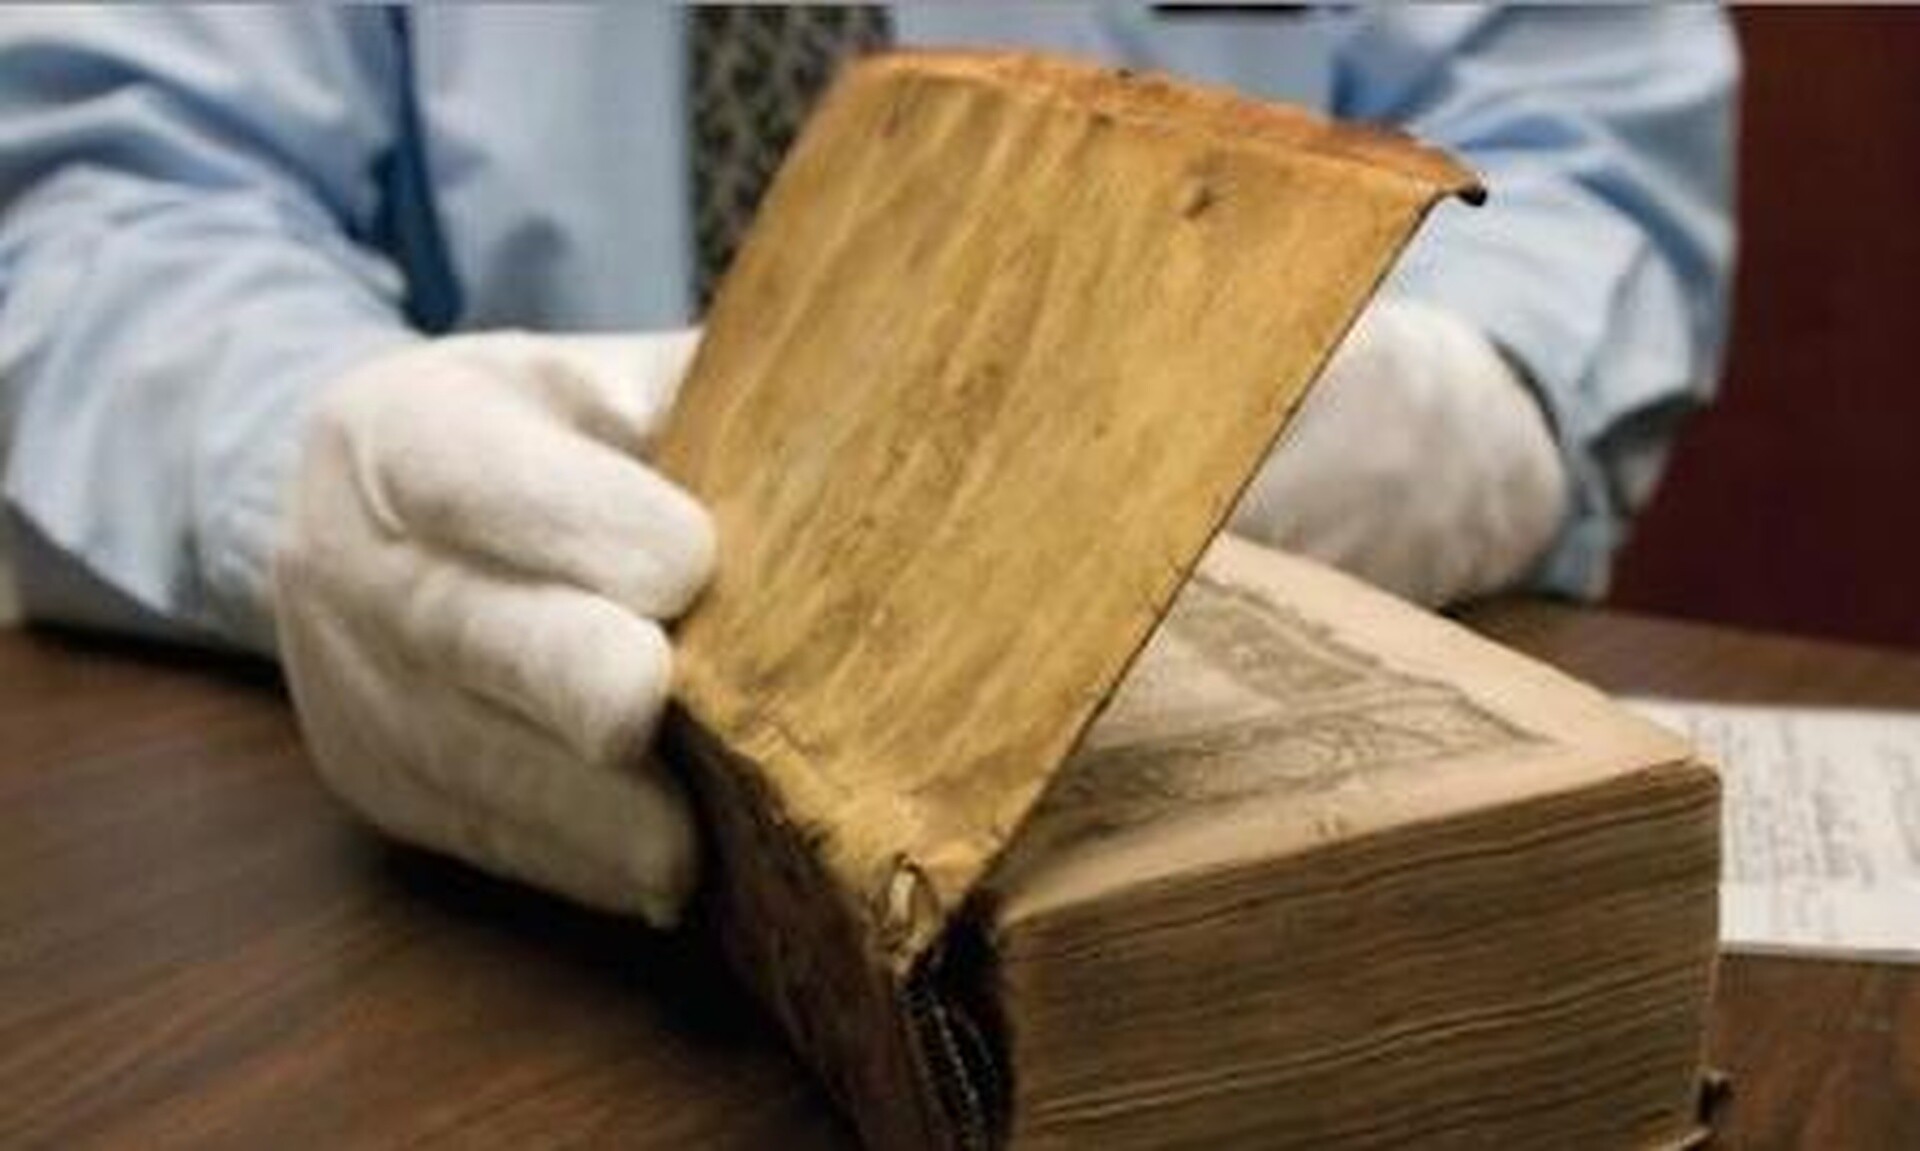 ΗΠΑ: Το Χάρβαρντ θα αφαιρέσει το δέσιμο από ανθρώπινο δέρμα από το βιβλίο του 1800